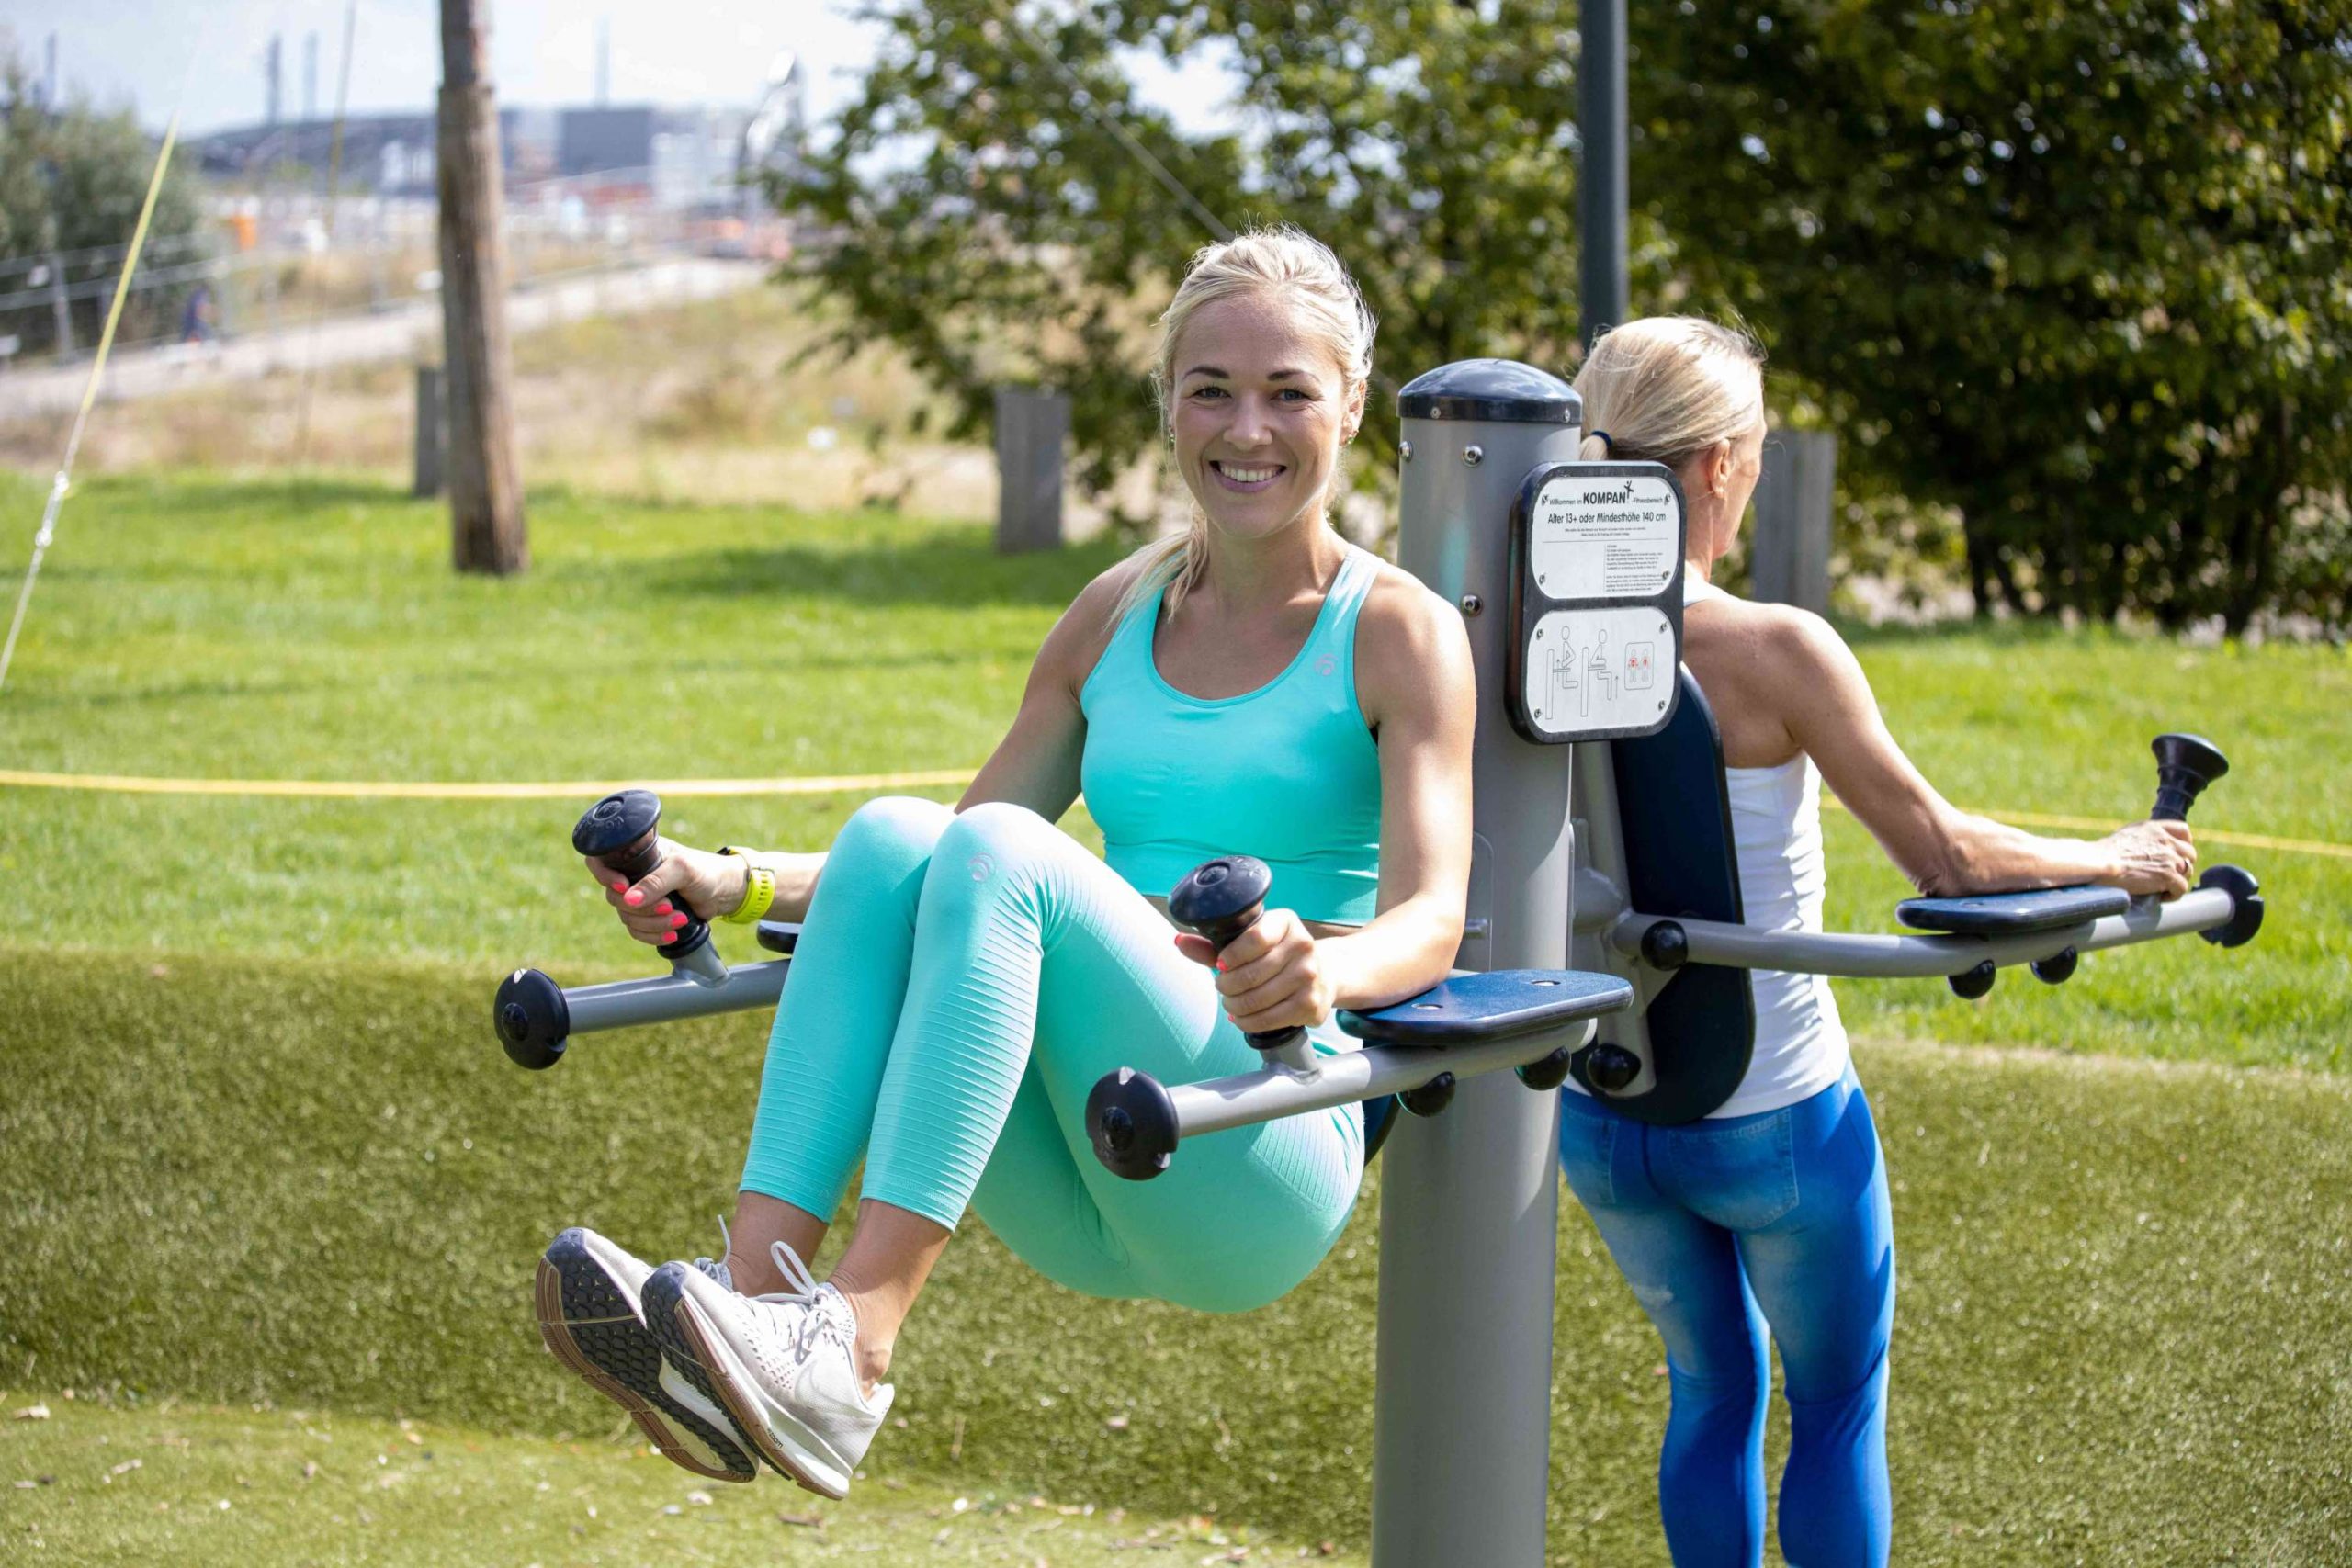 Fitnessportlerin macht eine Bauchmuskelübung an einem Fitnessgerät